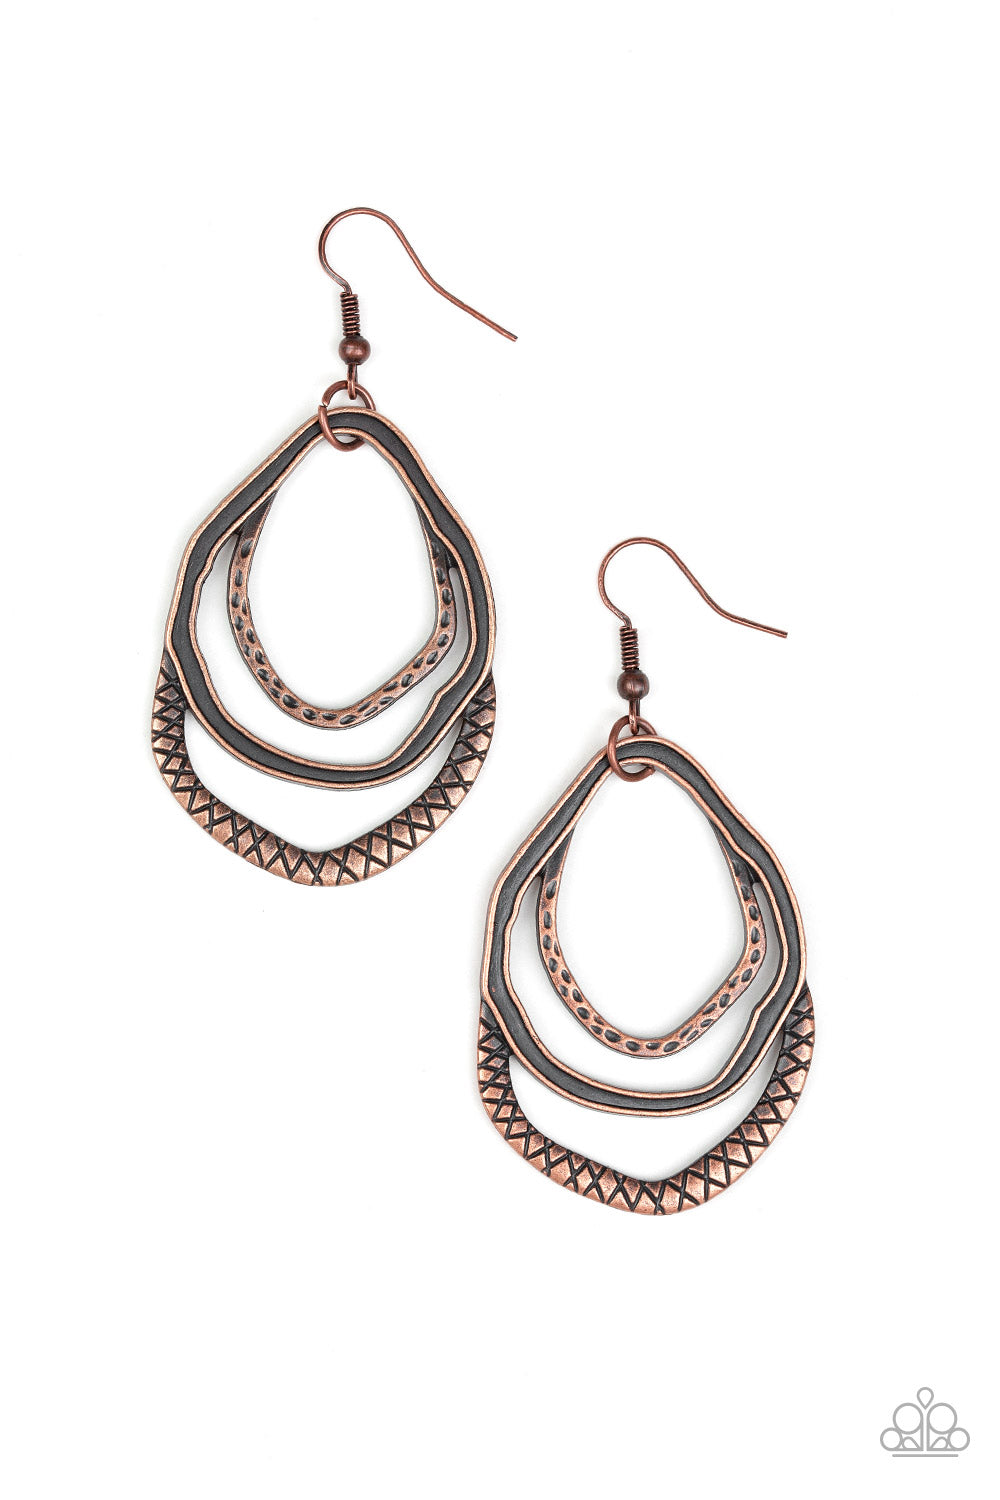 Canyon Casual Copper
Earrings - Daria's Blings N Things